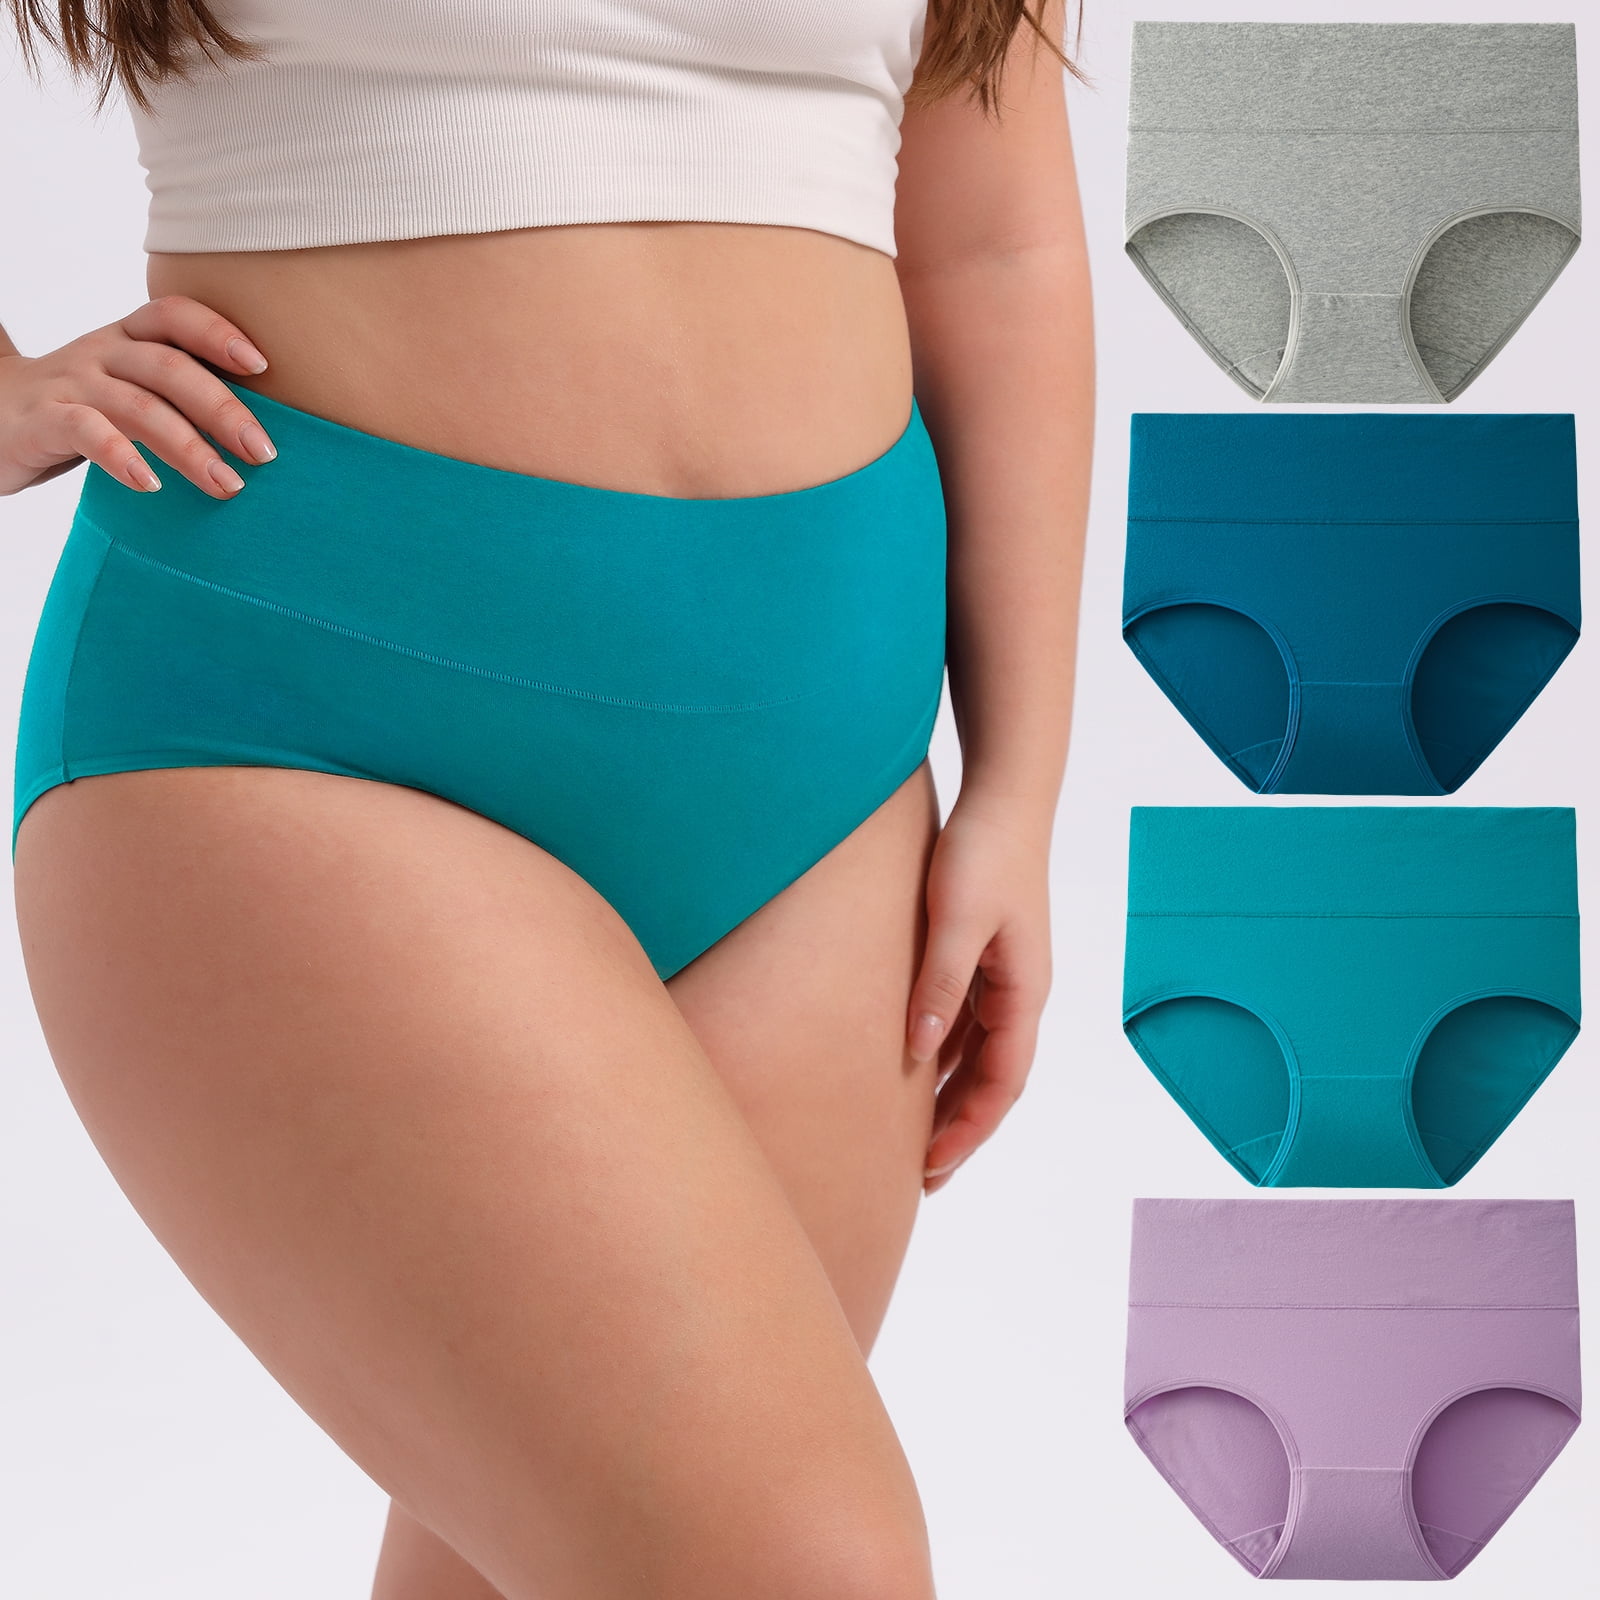 Just My Size Women's Sporty Cotton Brief Underwear, 6-Pack 